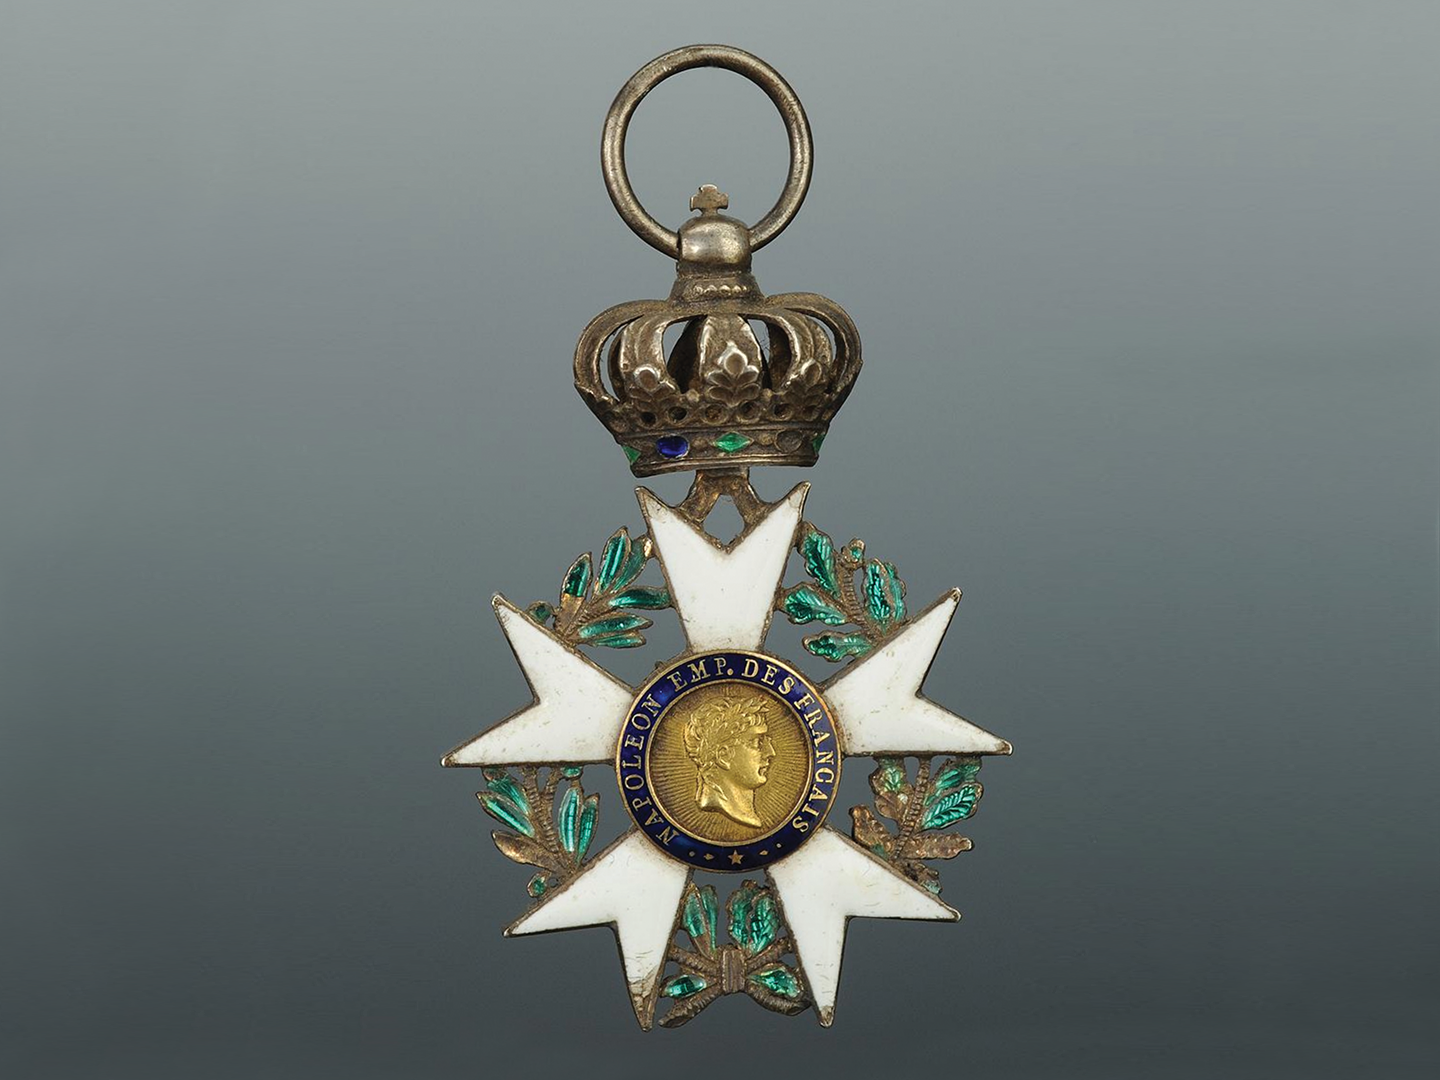 The Chevalier de la Legion d’Honneur award